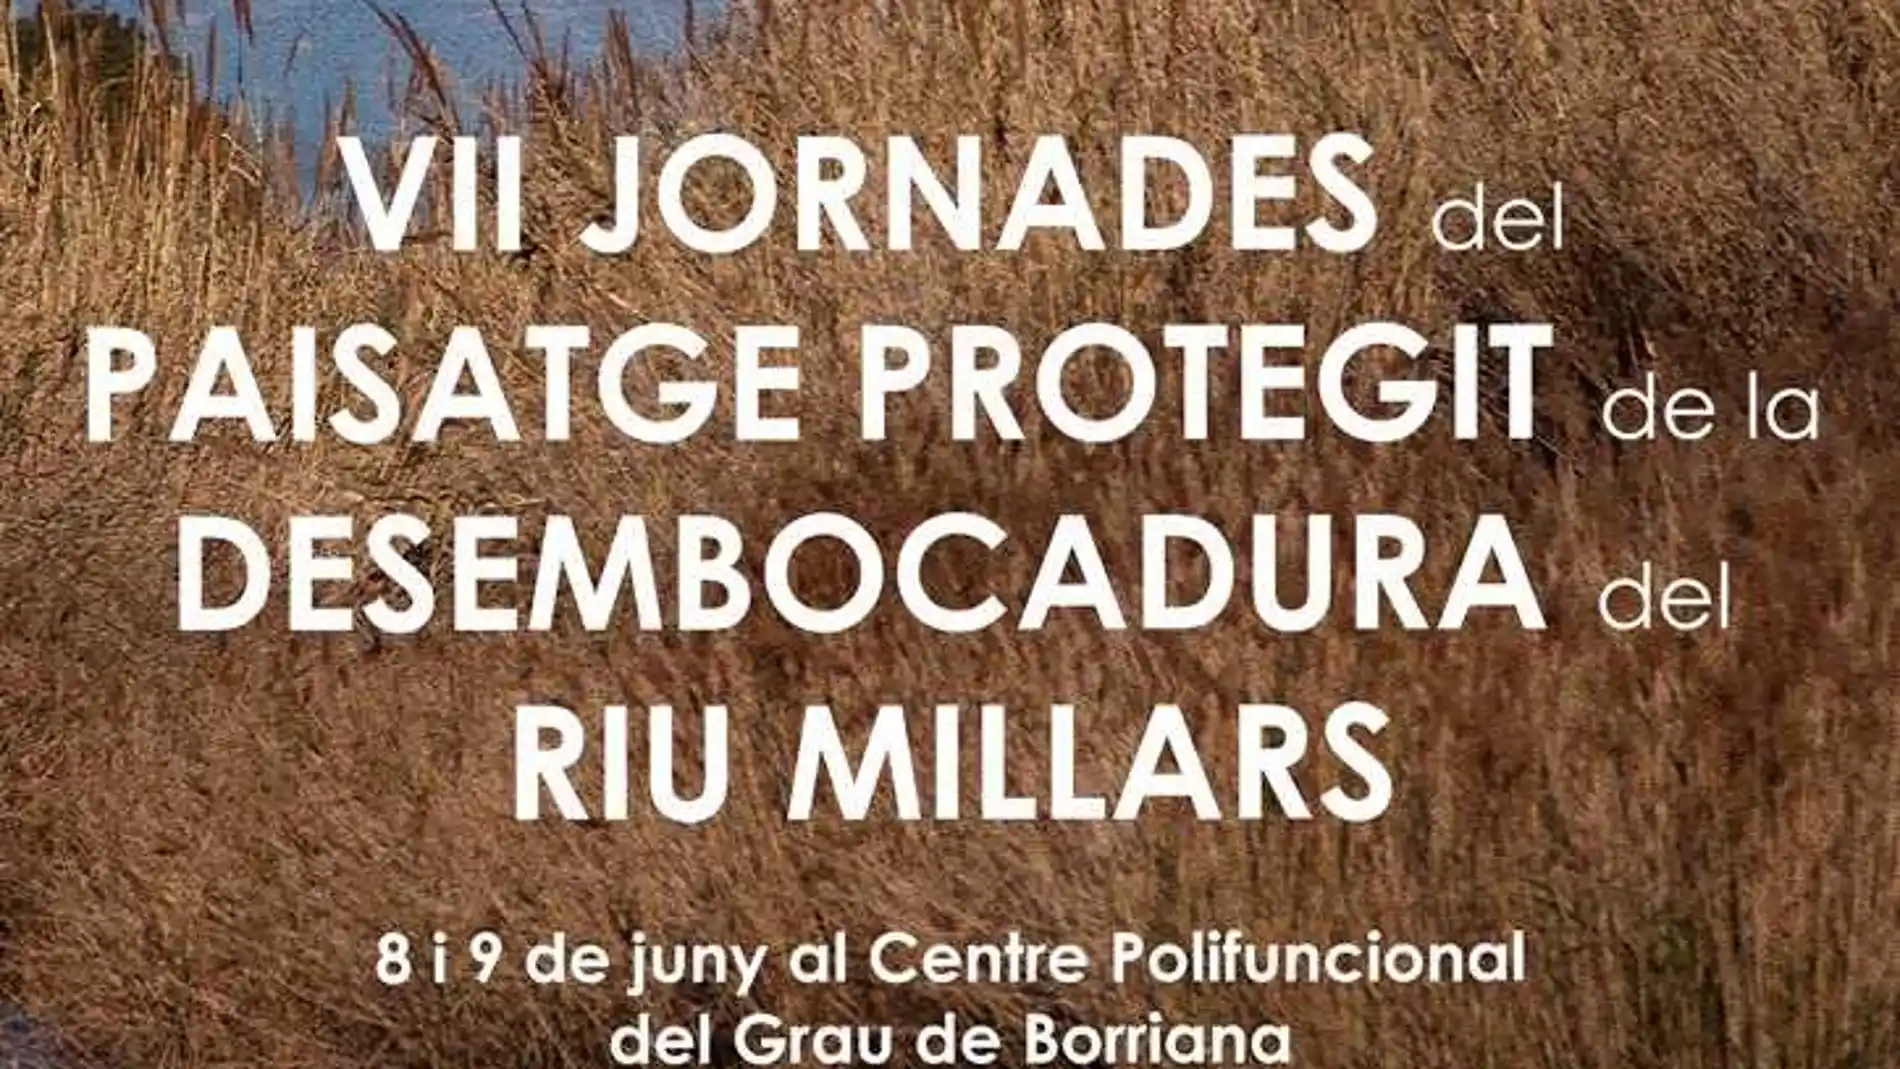 Conferencias, exposiciones y talleres en las VII Jornadas del Paisaje Protegido de la Desembocadura del Rio Mijares.